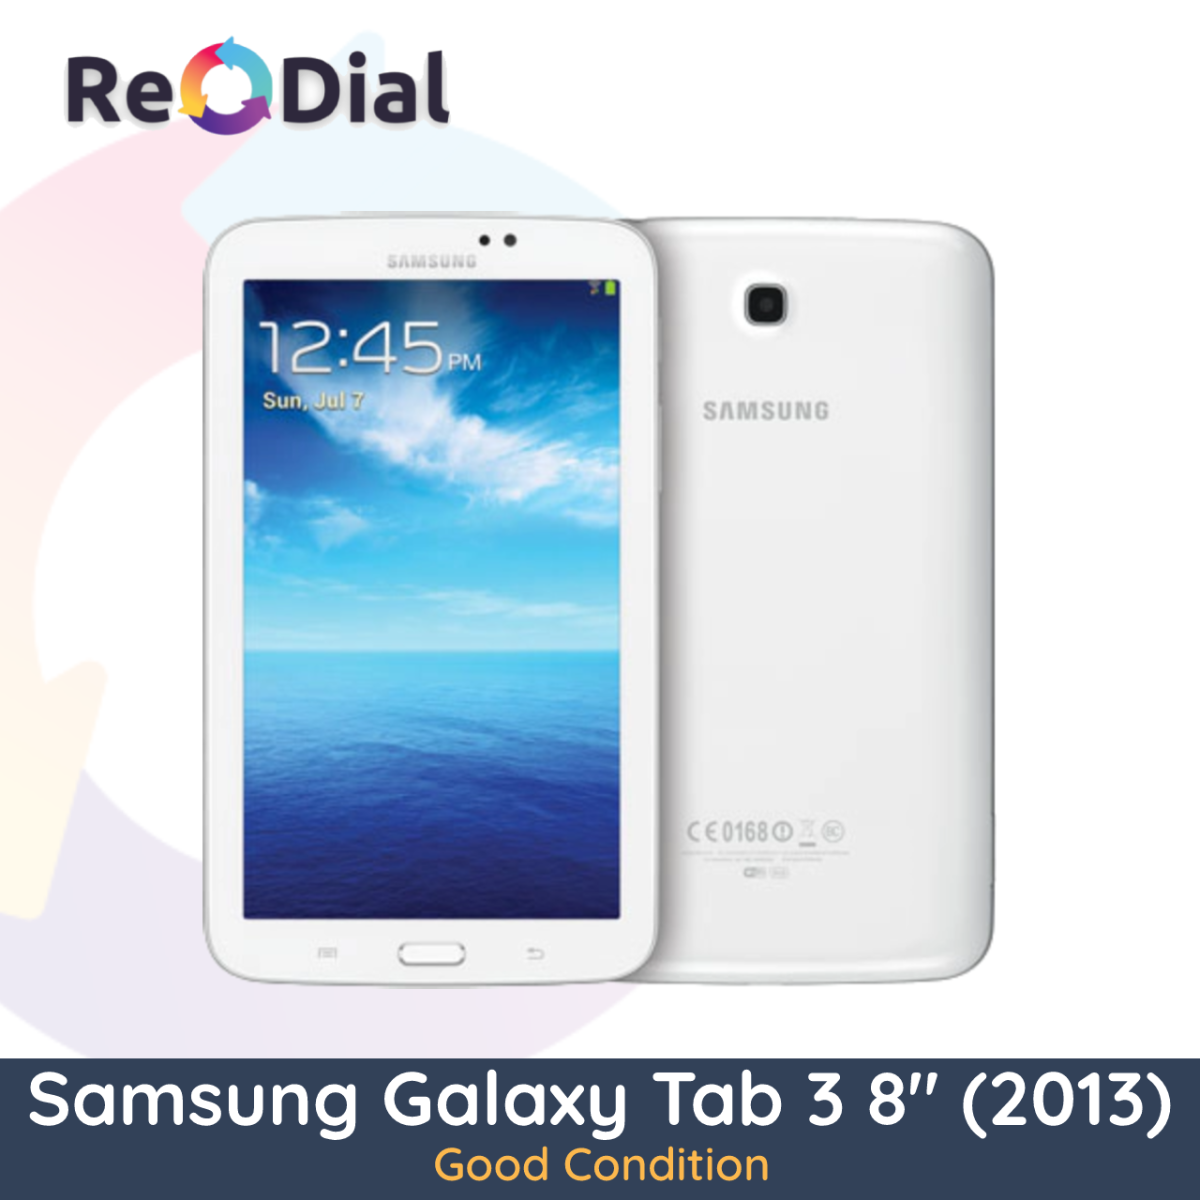 Samsung Galaxy Tab 3 8.0" (T315 / 2013) WiFi + Cellular - Good Condition